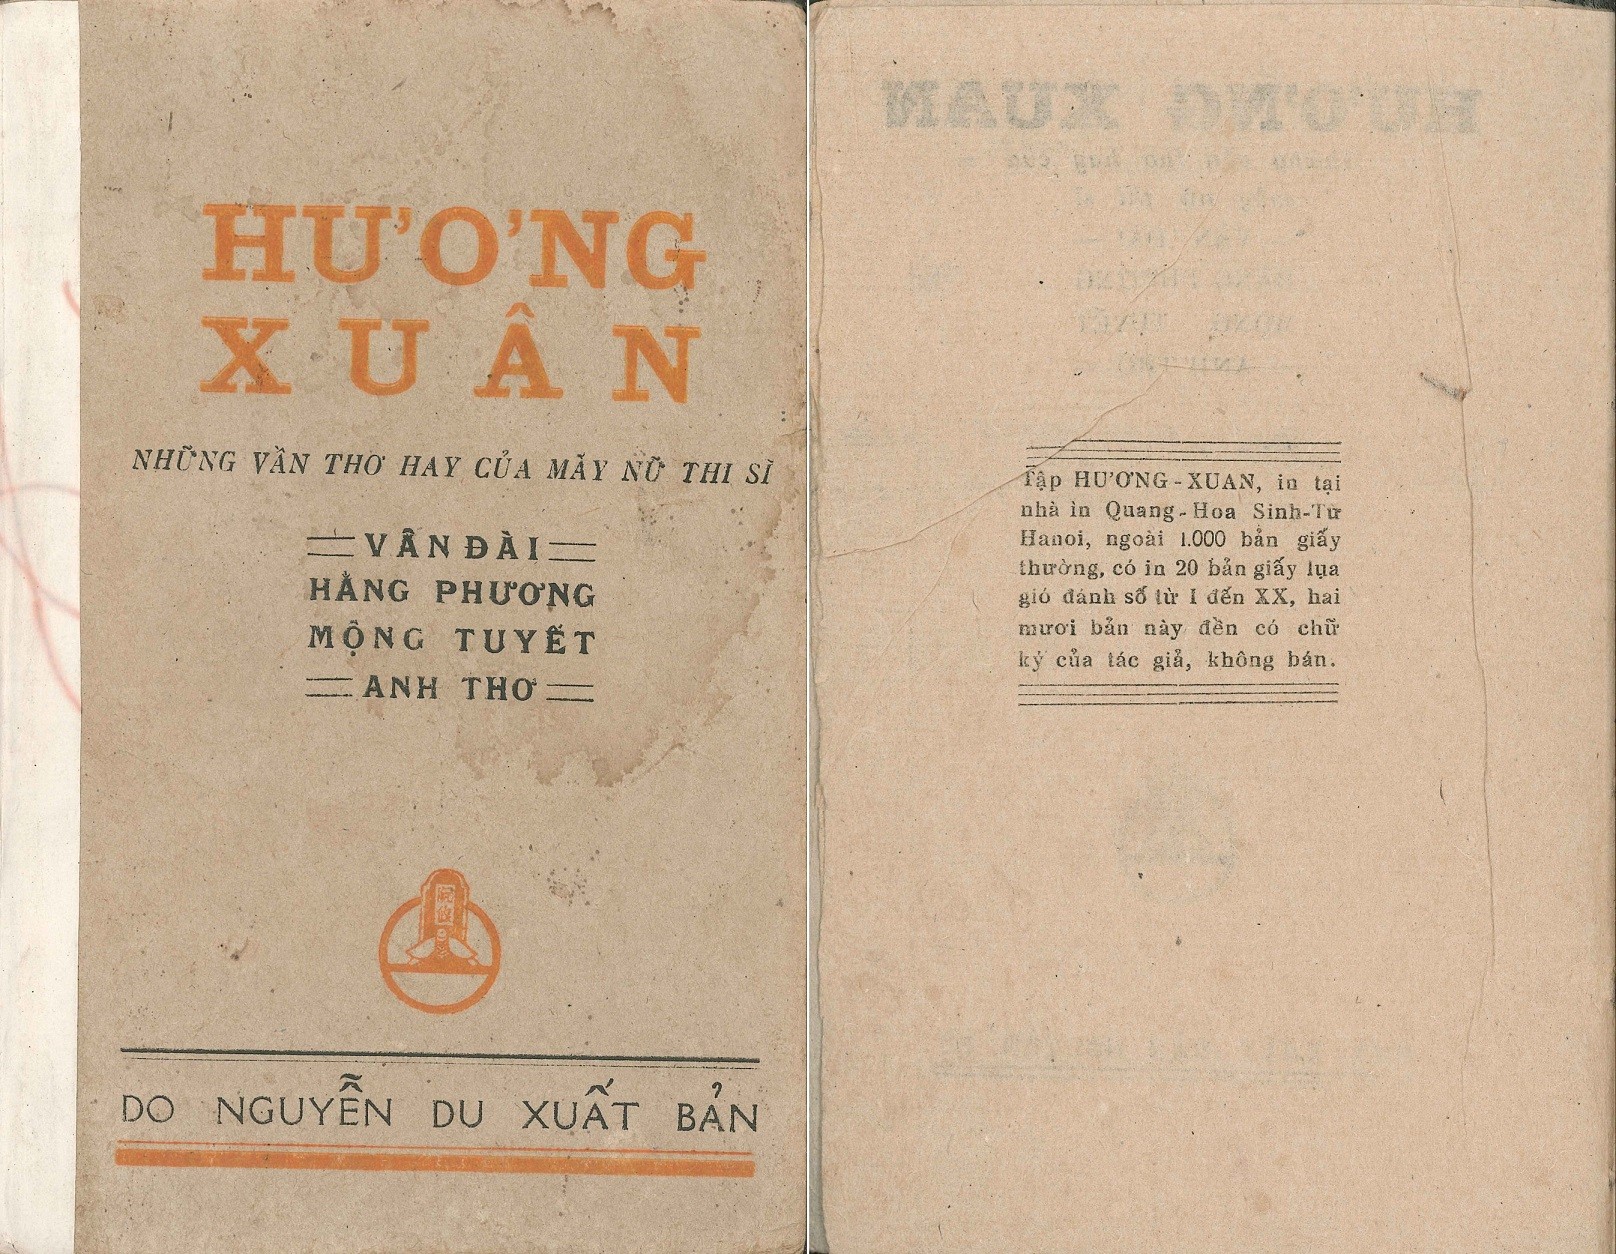 tho-hang-phuong-nu-si-trong-tap-huong-xuan-1943-03-1649336895.jpg